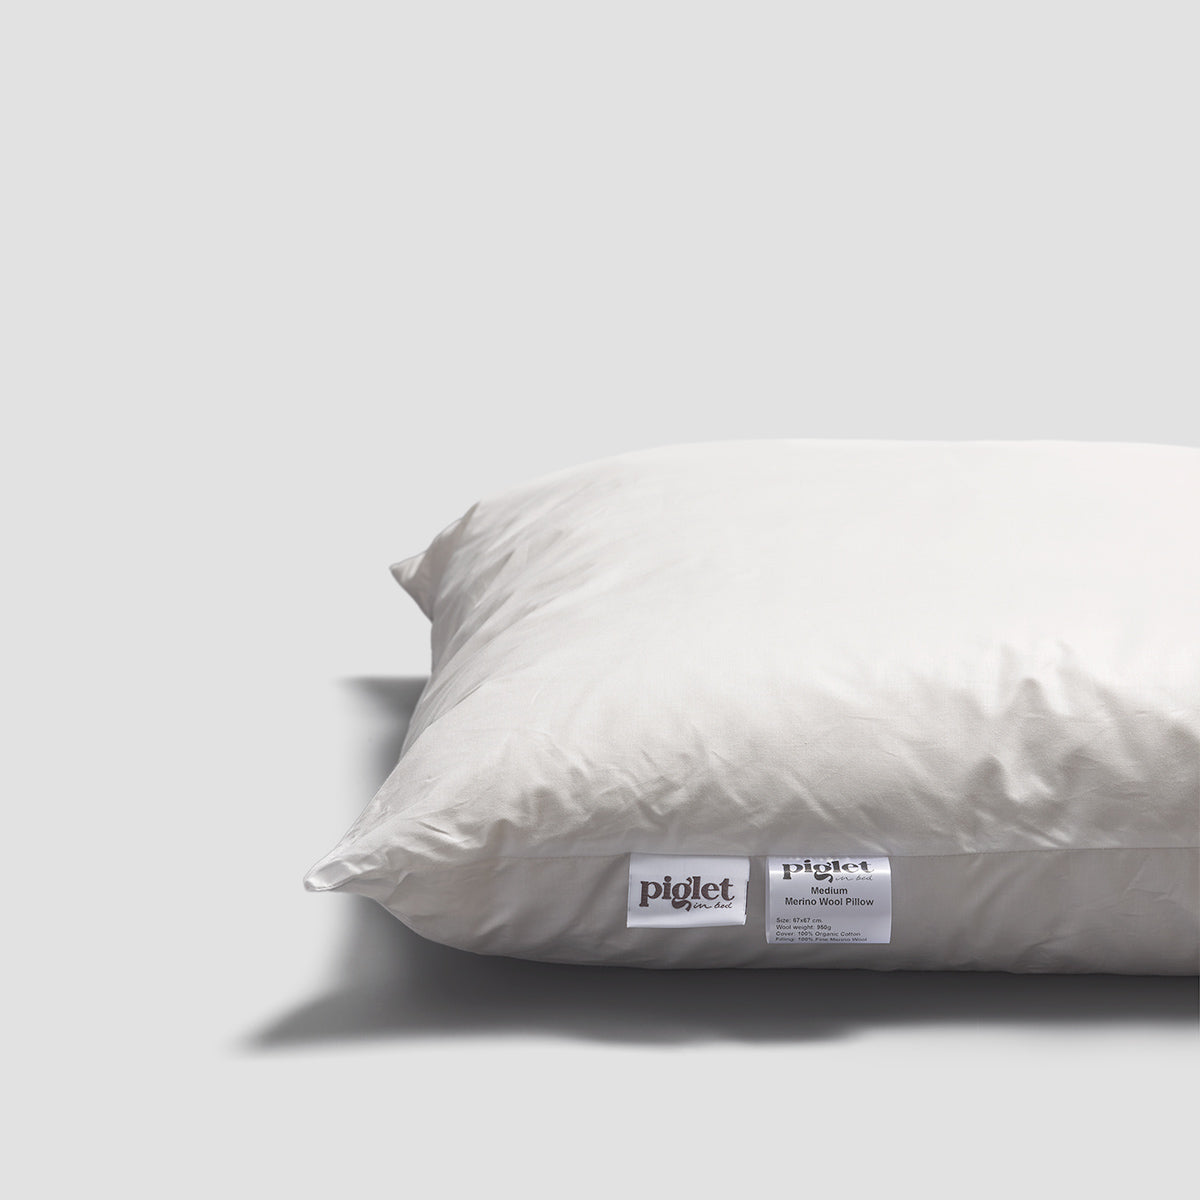 Merino Wool Pillow - Medium Weight